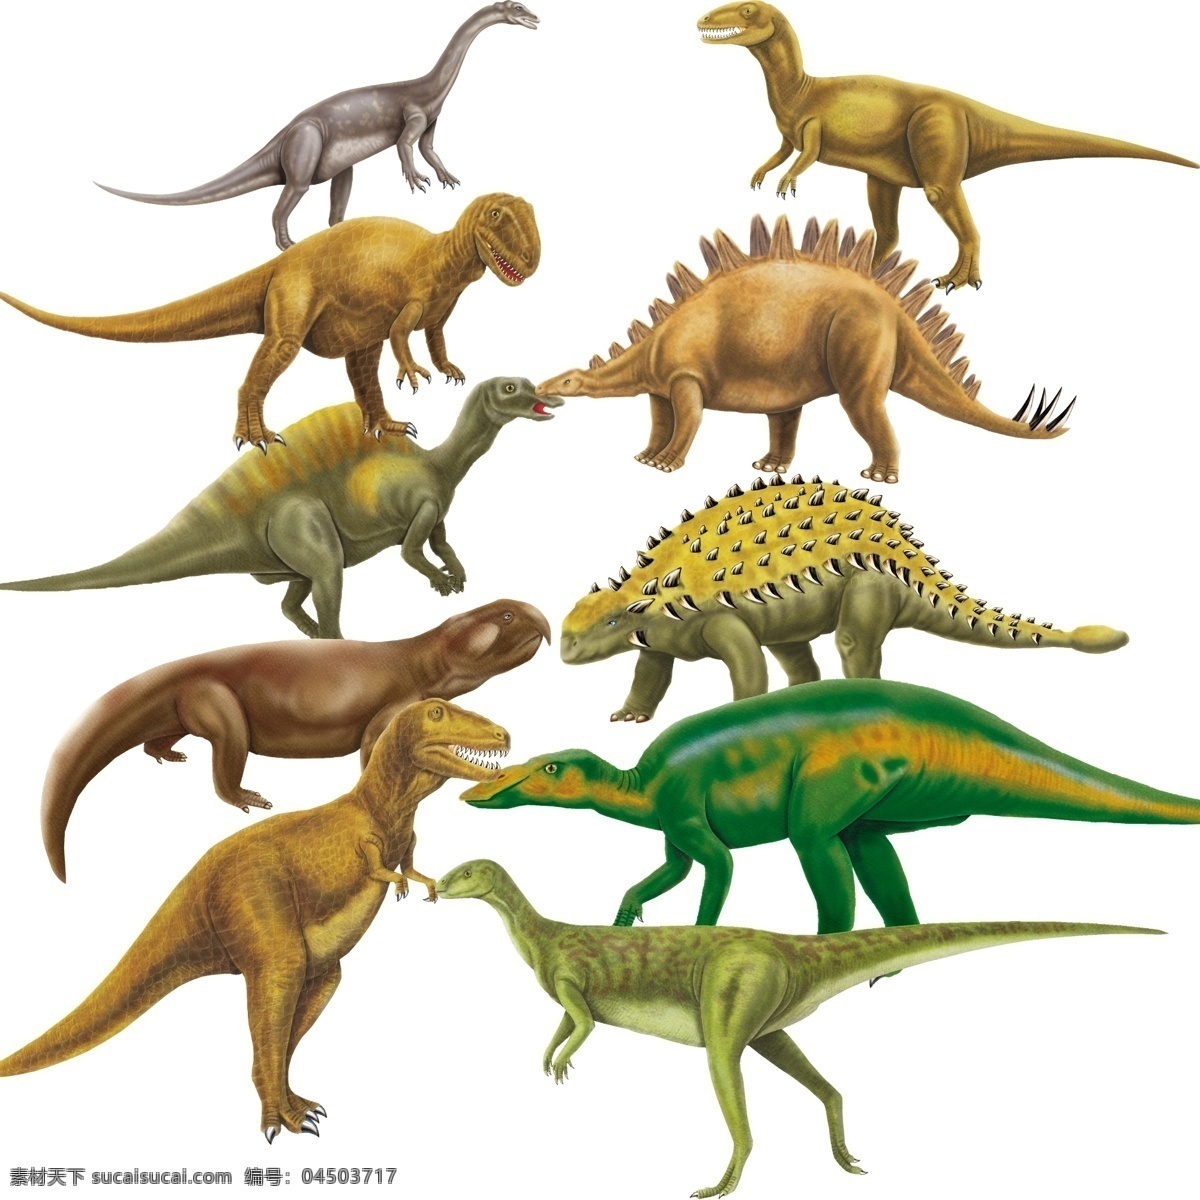 分层 恐龙素材 源文件 恐龙 原创 模板下载 恐龙原创素材 有图层 300象素 电脑绘图 插画材料图 插画集